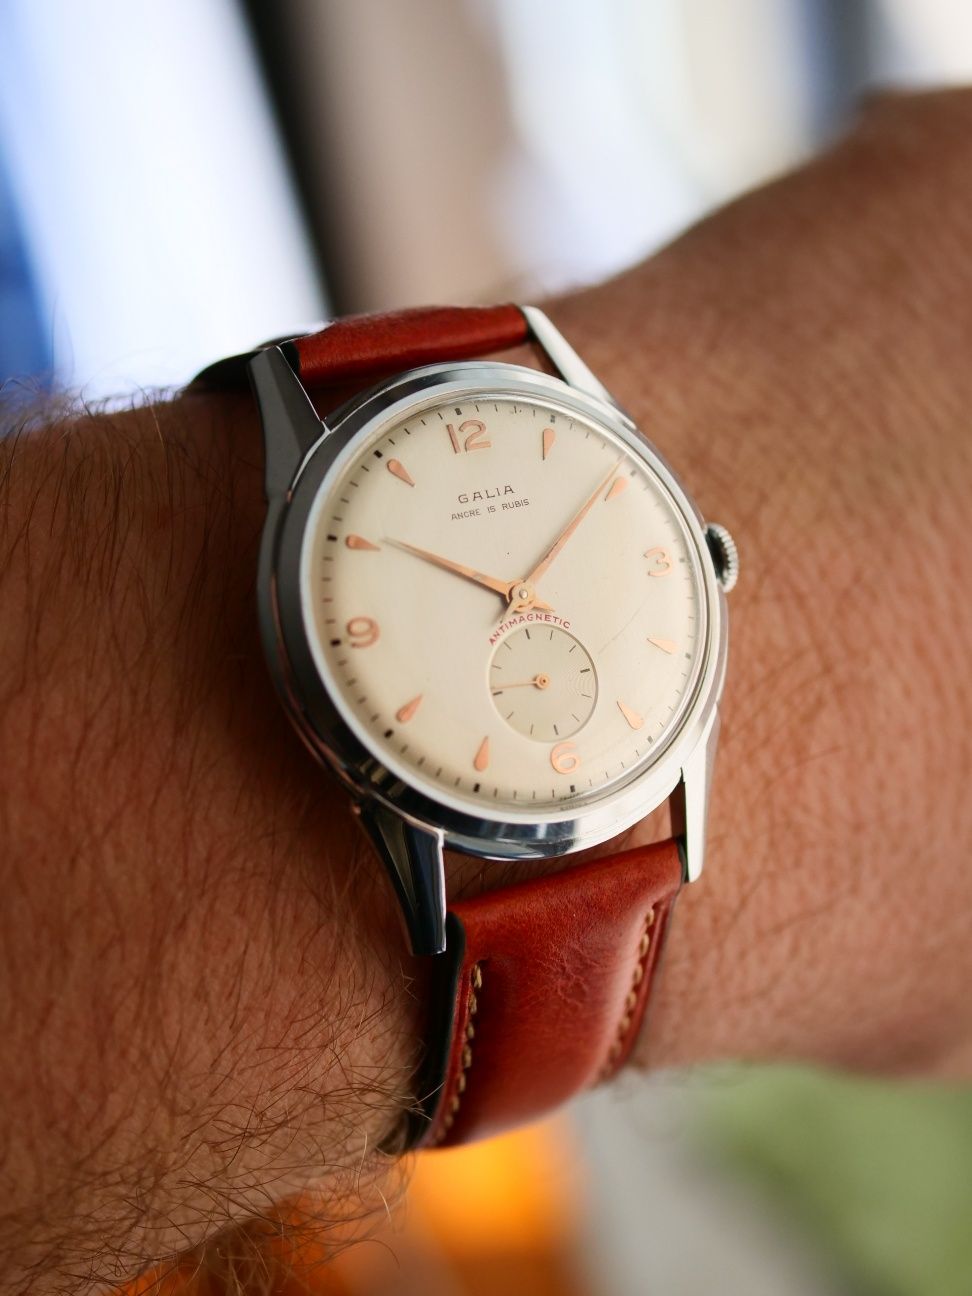 Galia zegarek szwajcarski swiss made stary vintage przepiękny cudo